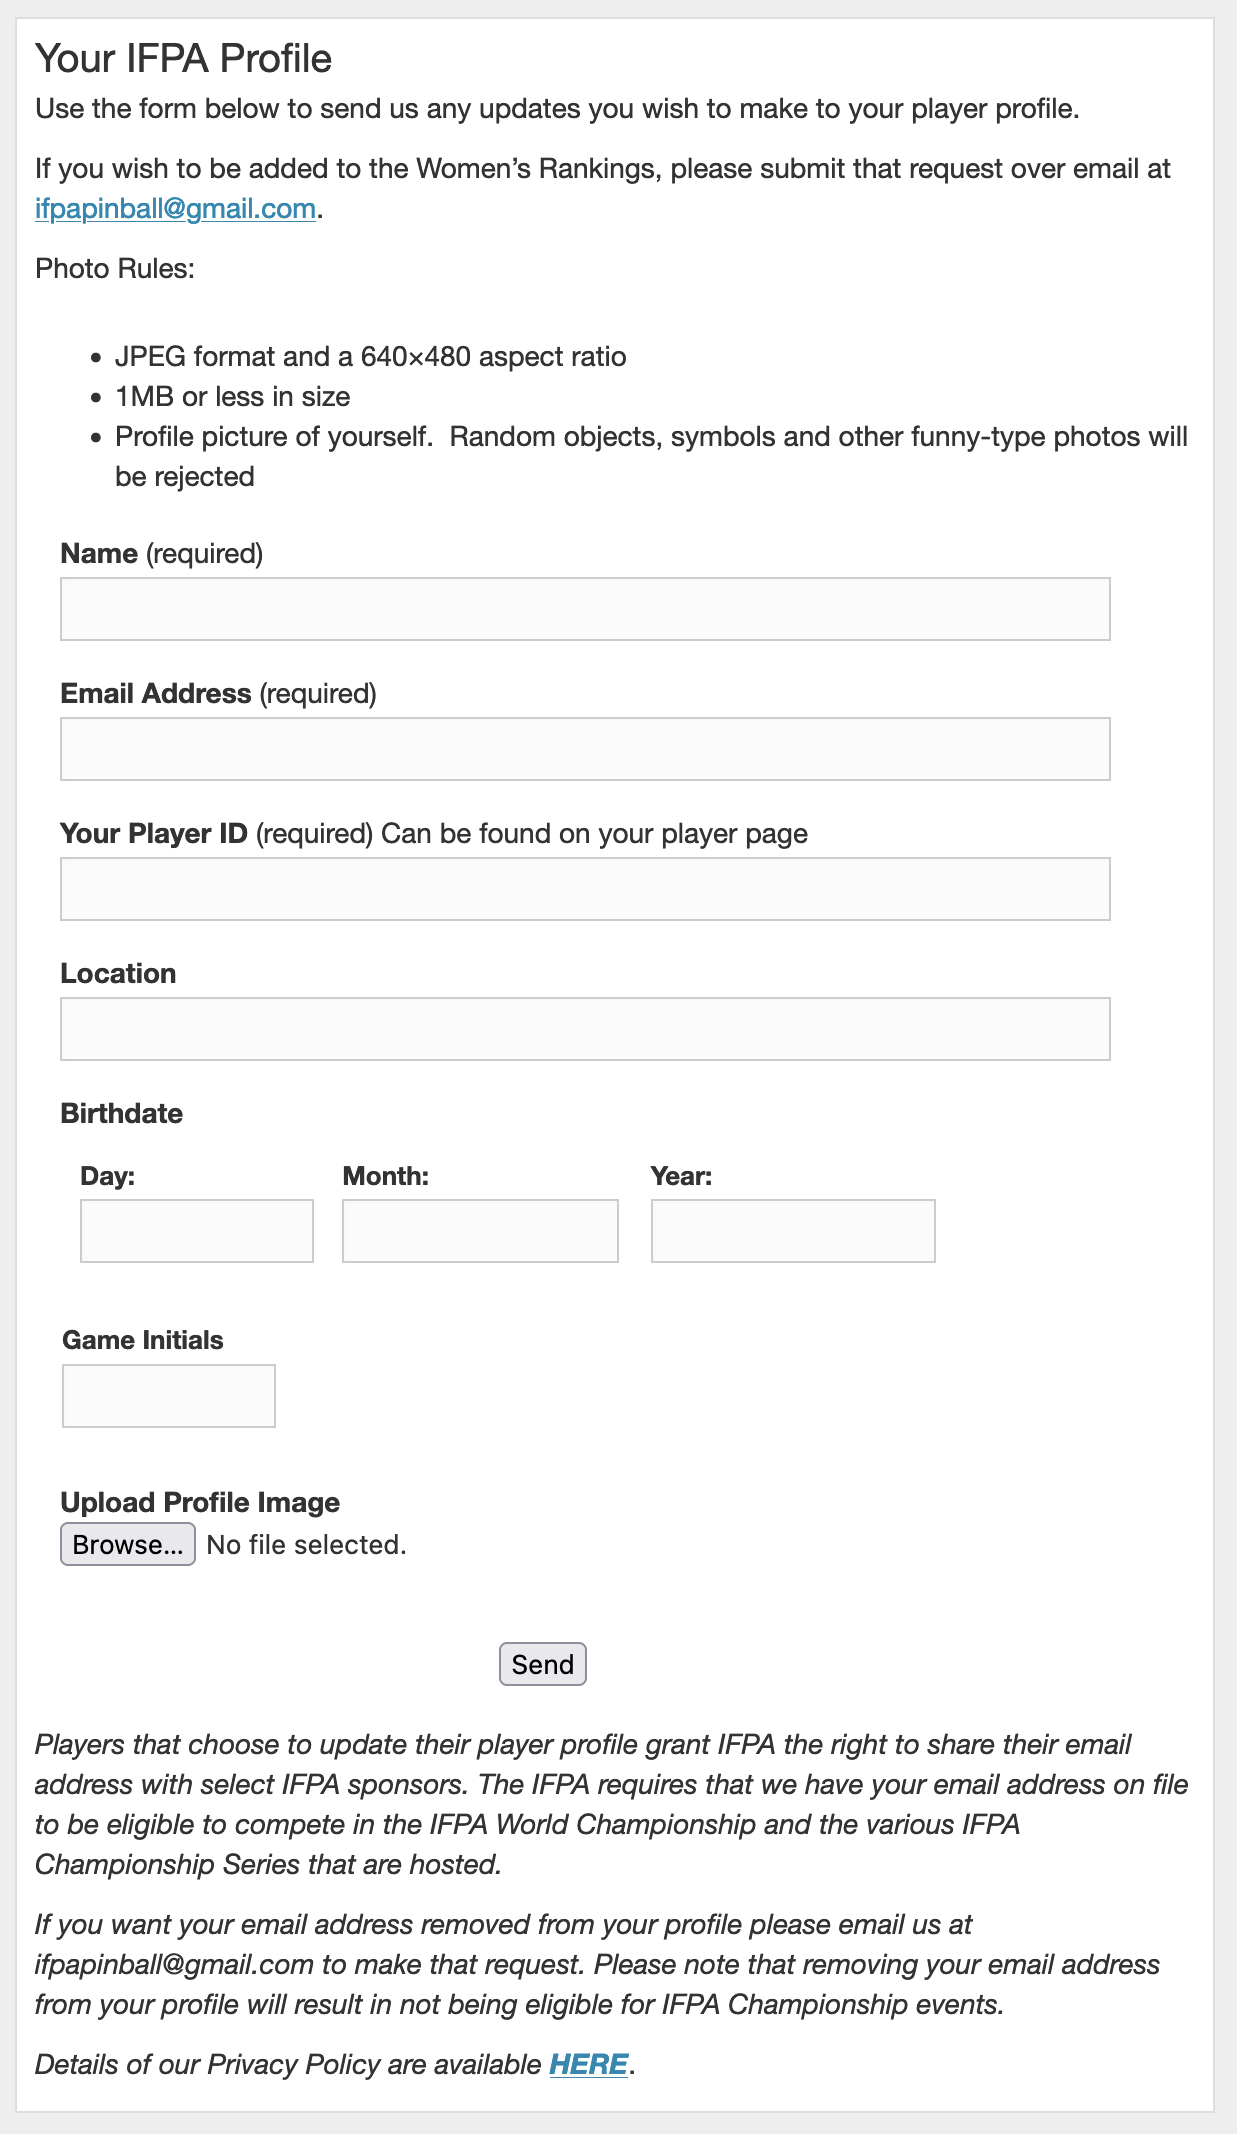 Screenshot of IFPA Profile form